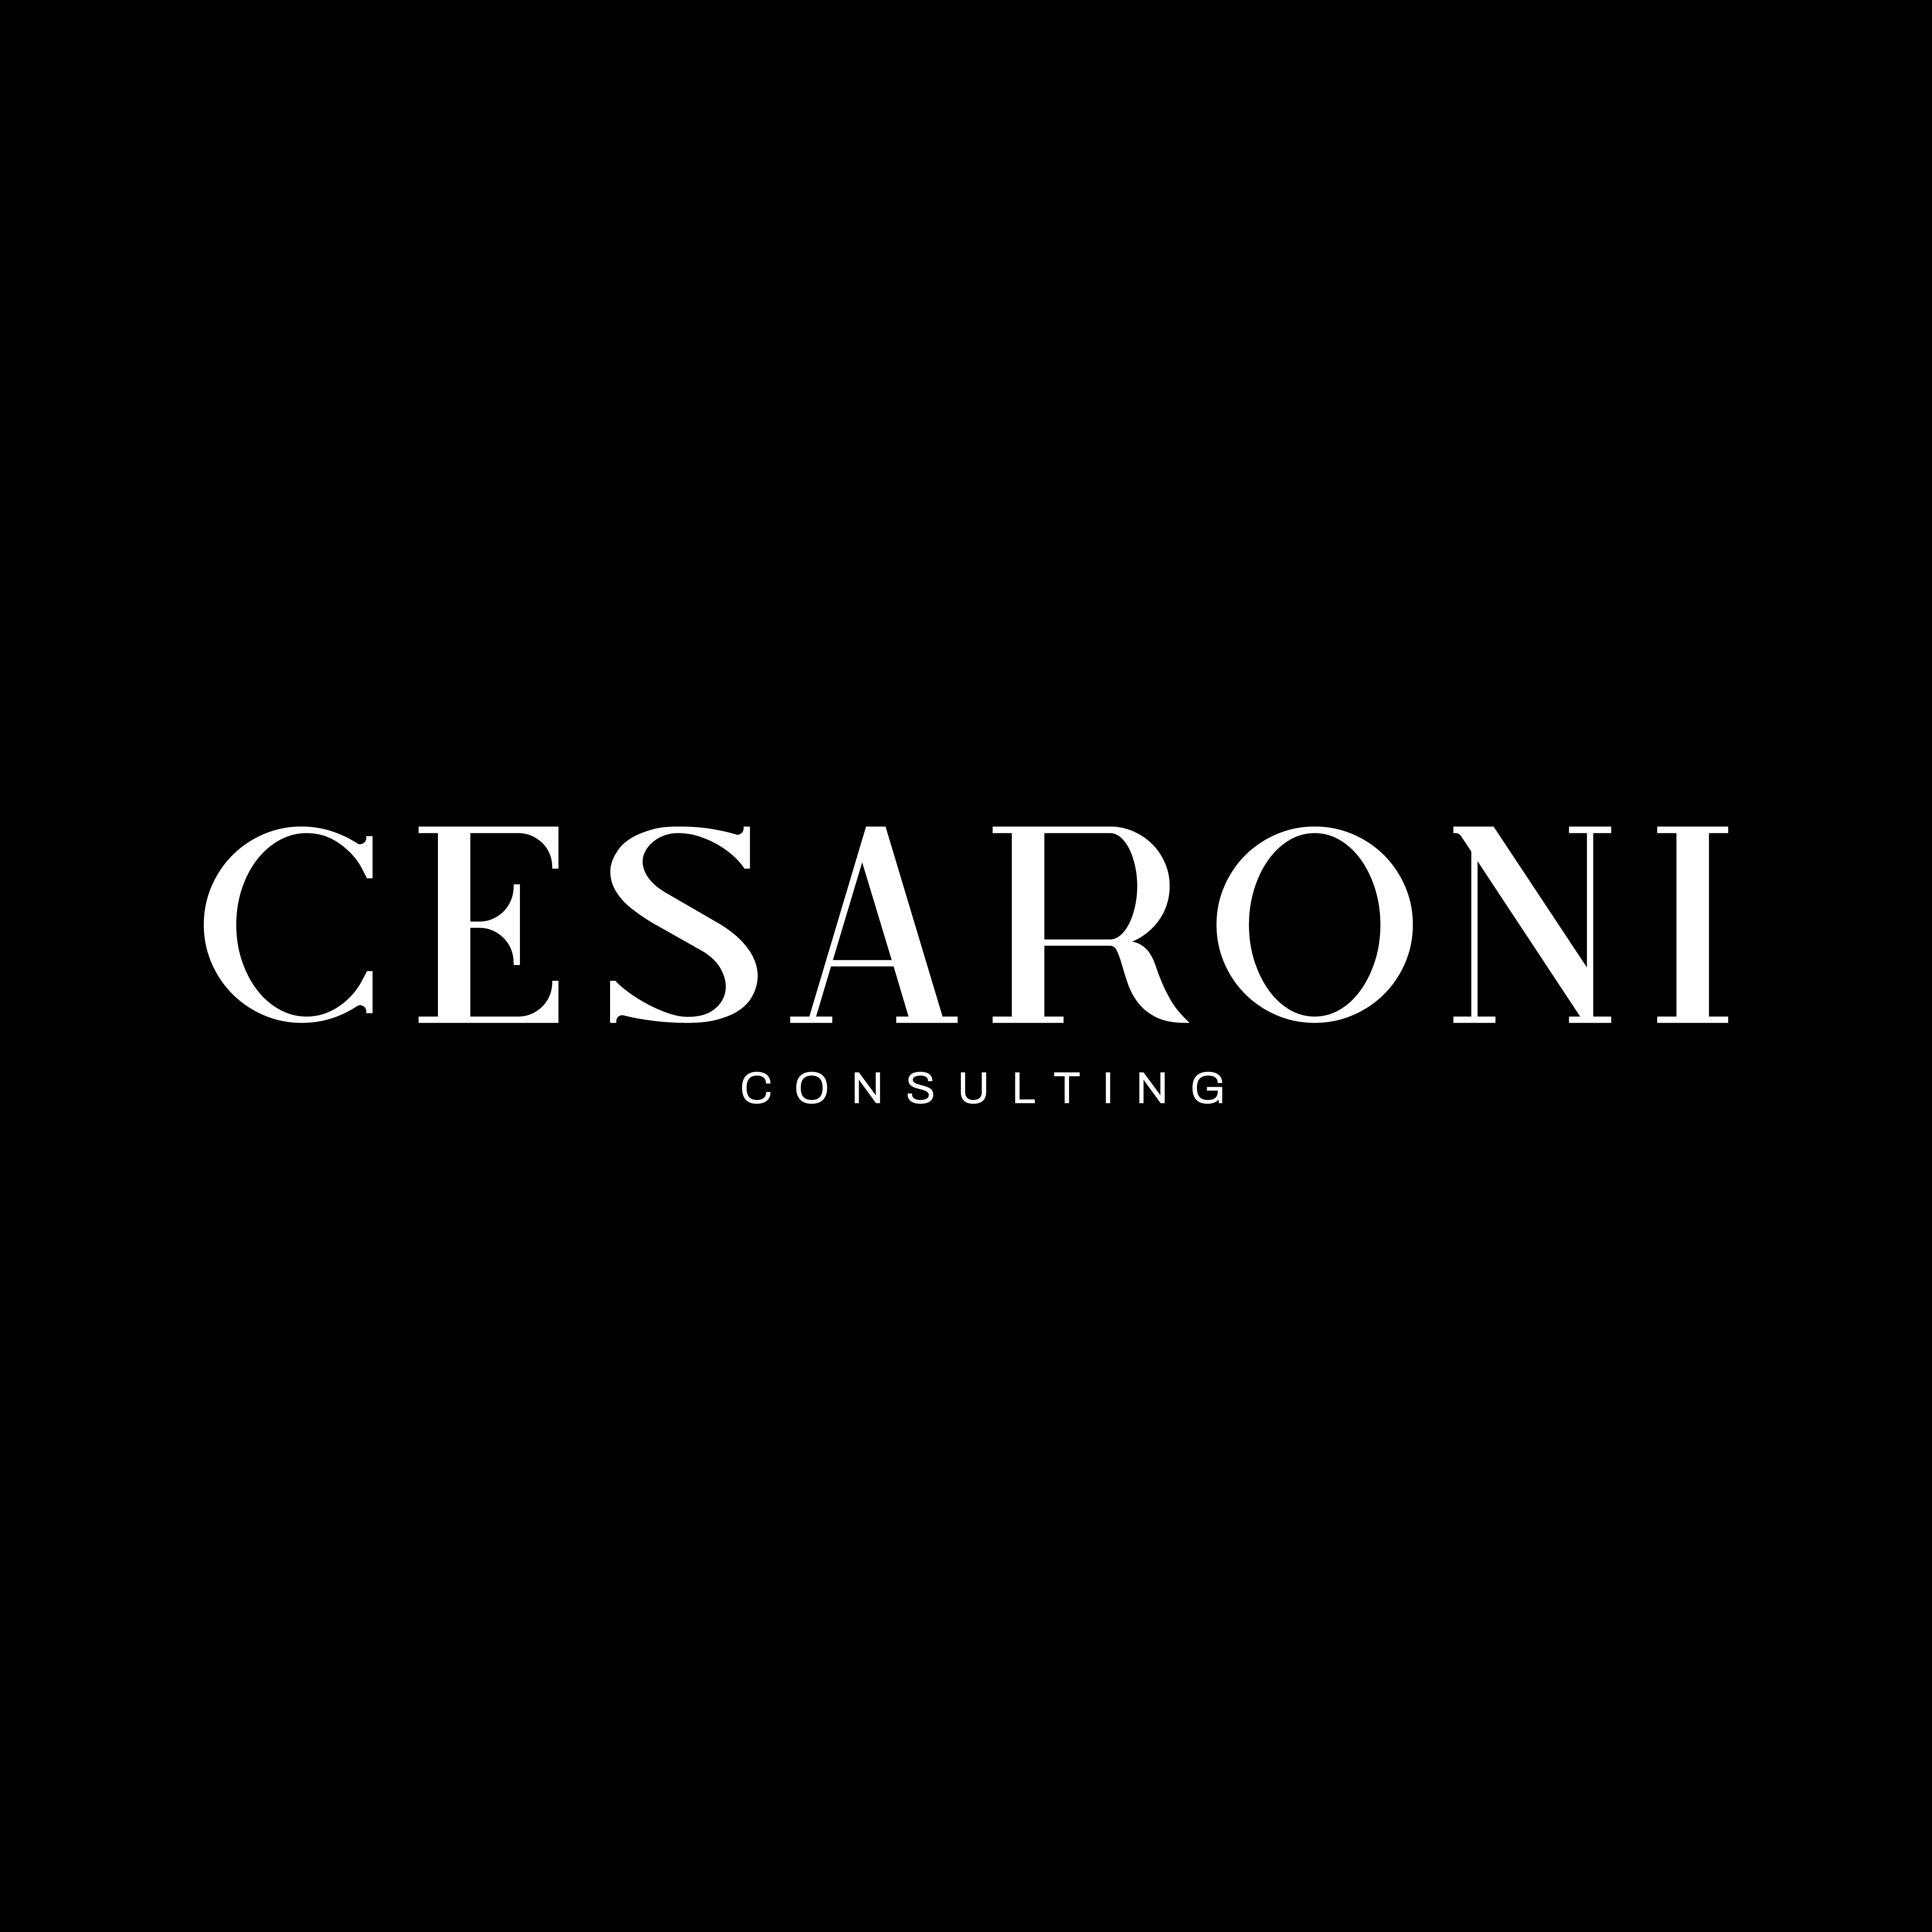 Cesaroni Consulting